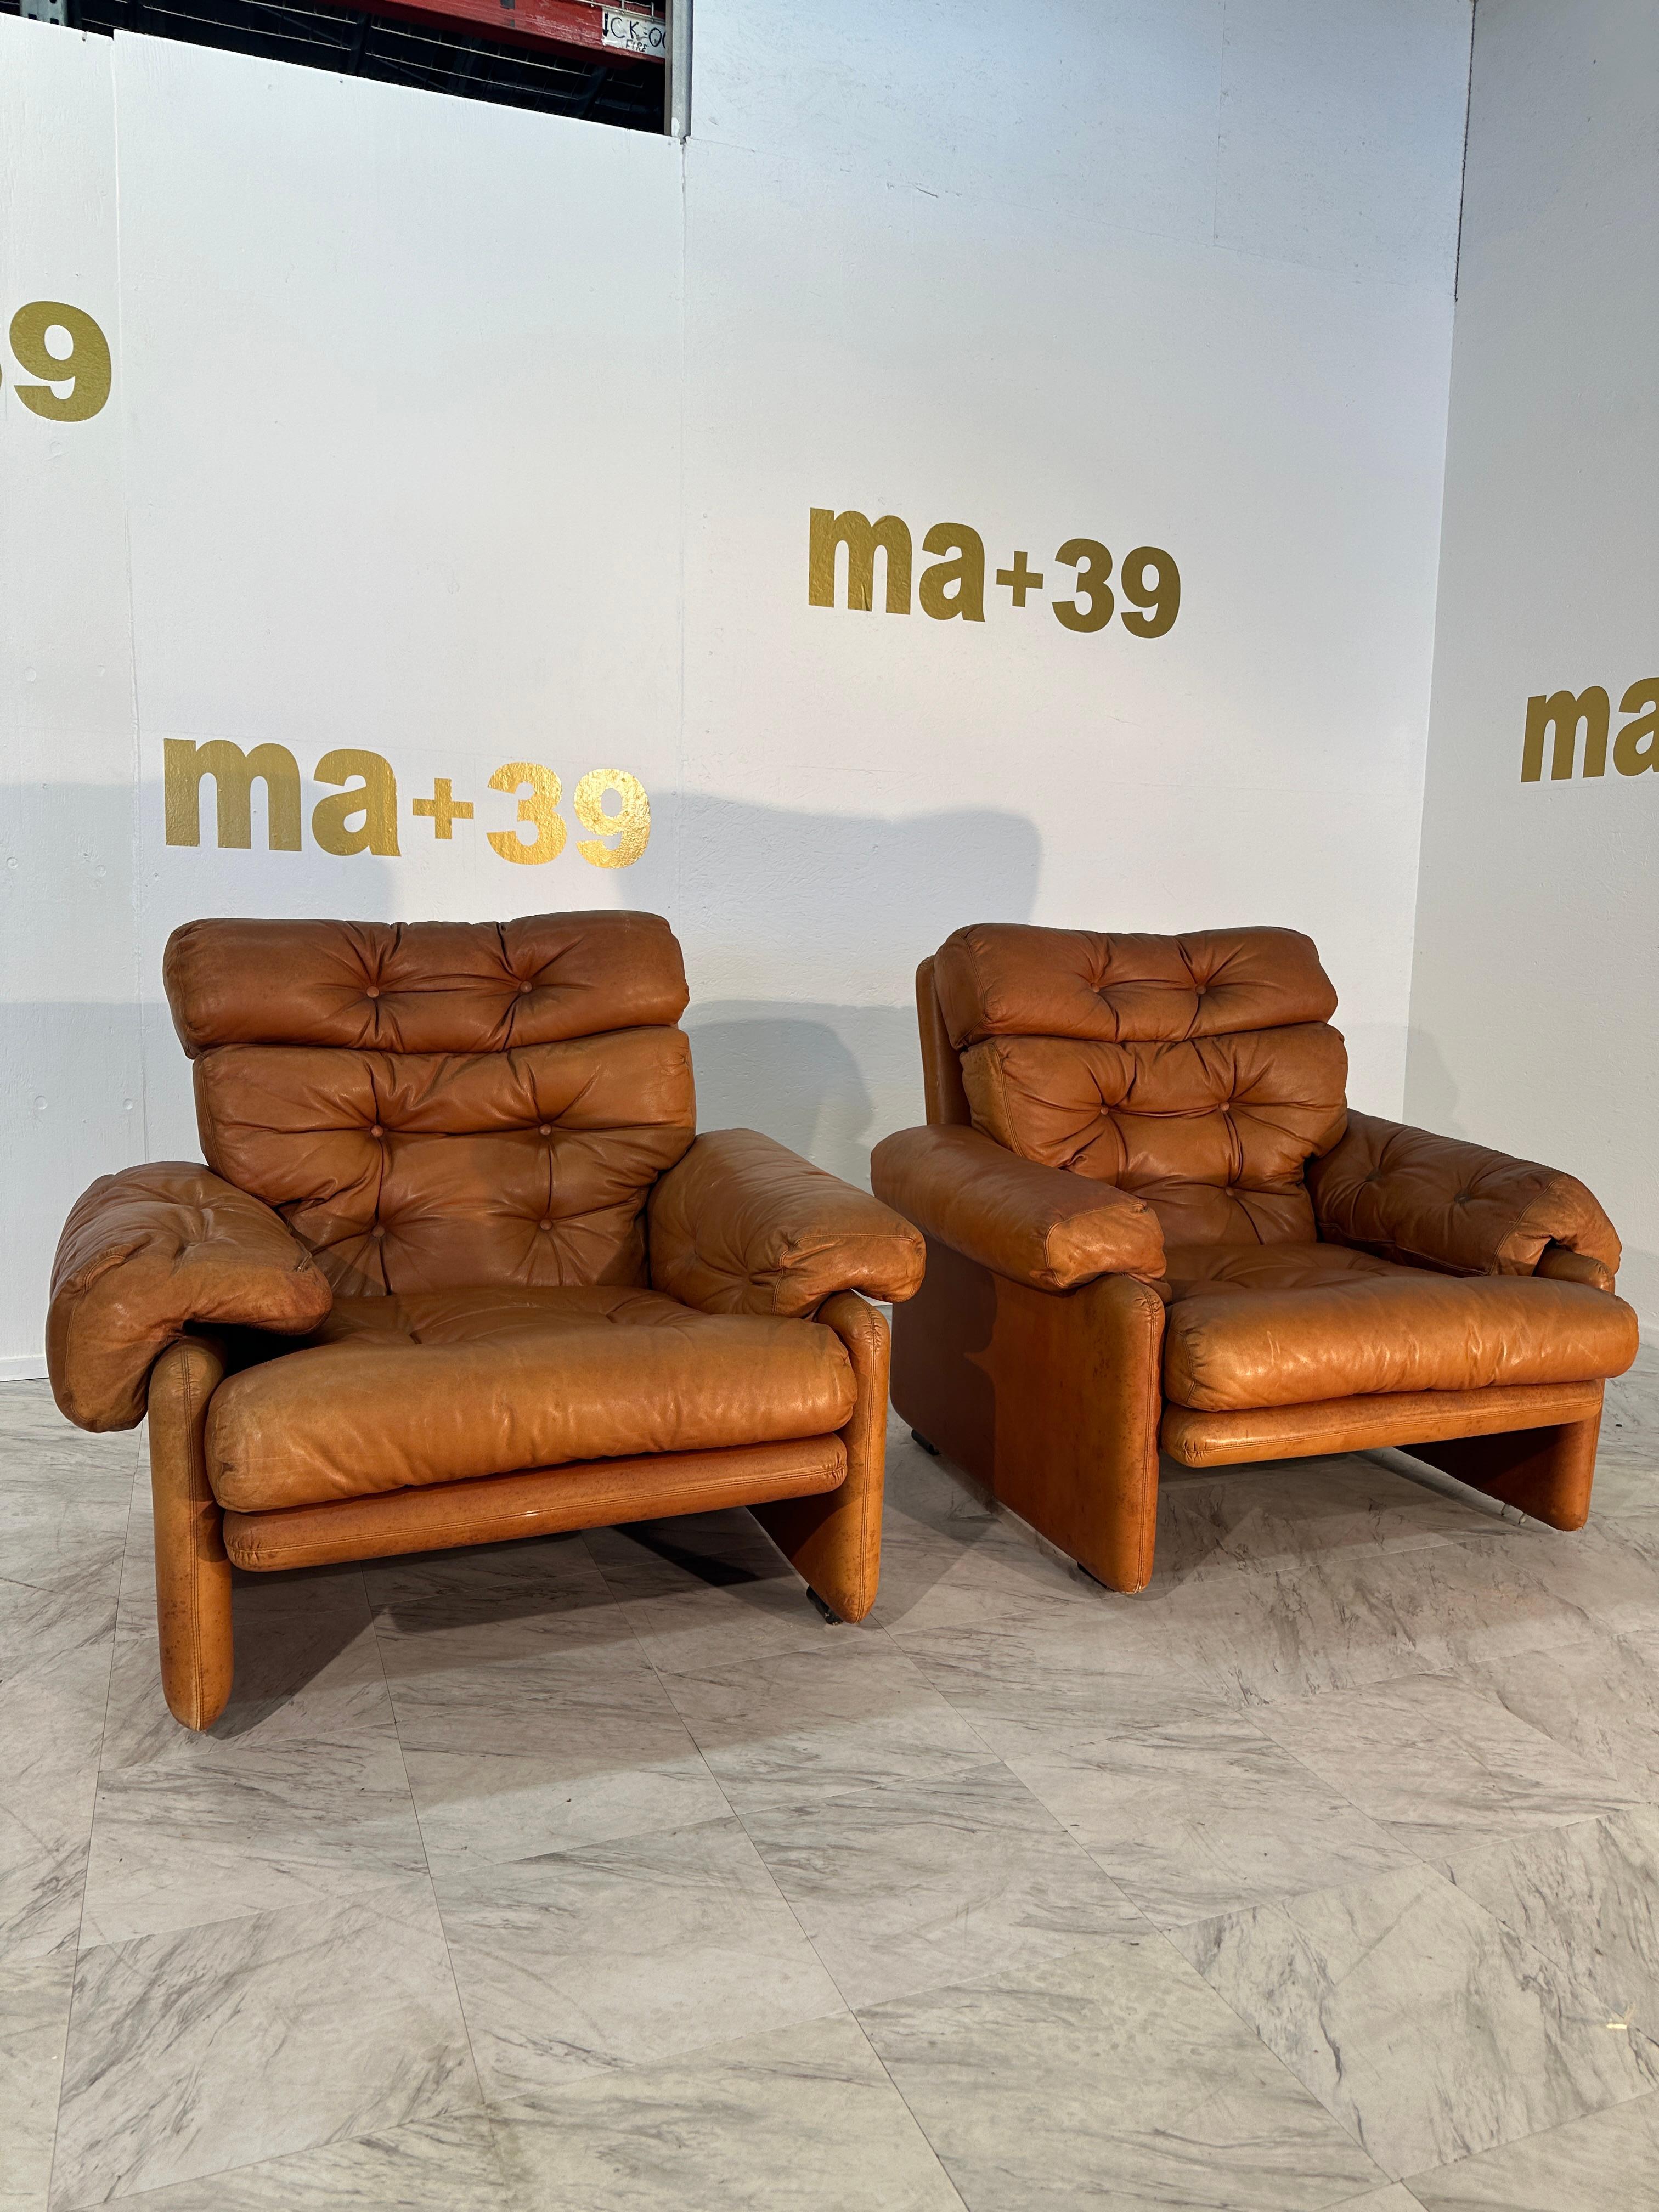 La paire de 2 chaises Coronado d'Afra & Tobia Scarpa pour C&B Italia, datant des années 1960, sont des exemples emblématiques du design moderne du milieu du siècle. Ces chaises sont revêtues d'un cuir entièrement brun, ce qui leur confère une